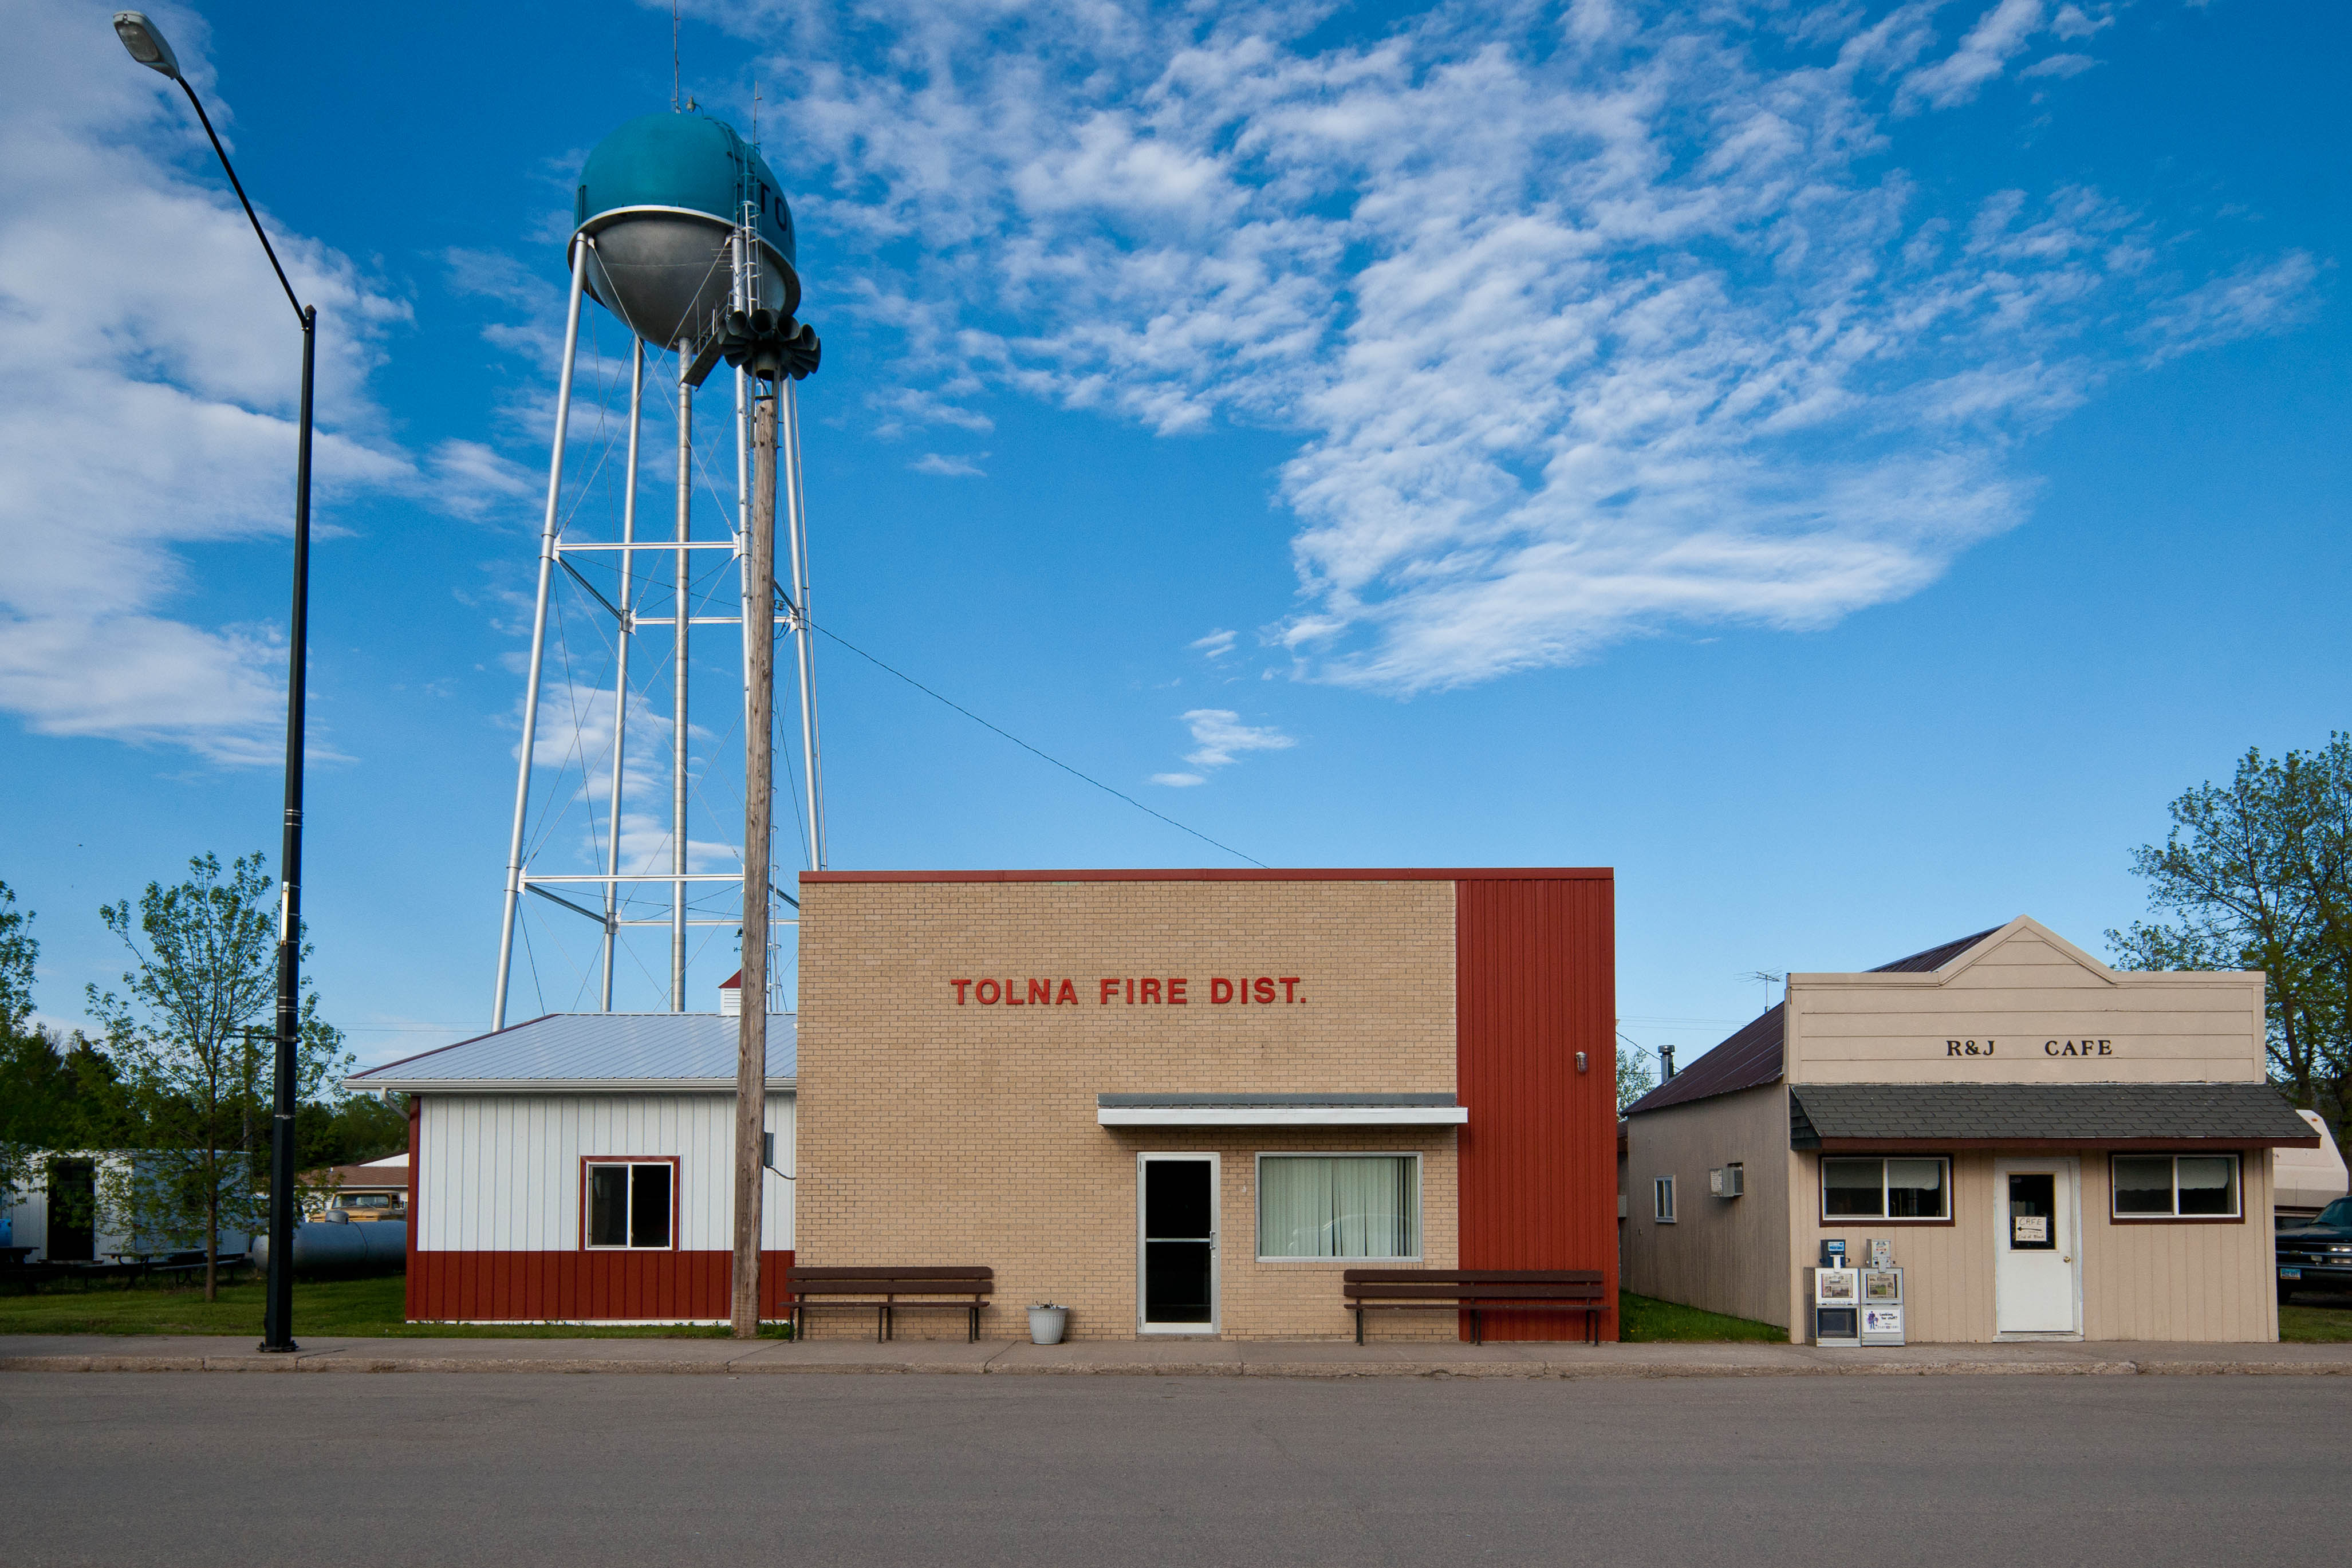 Tolna, North Dakota